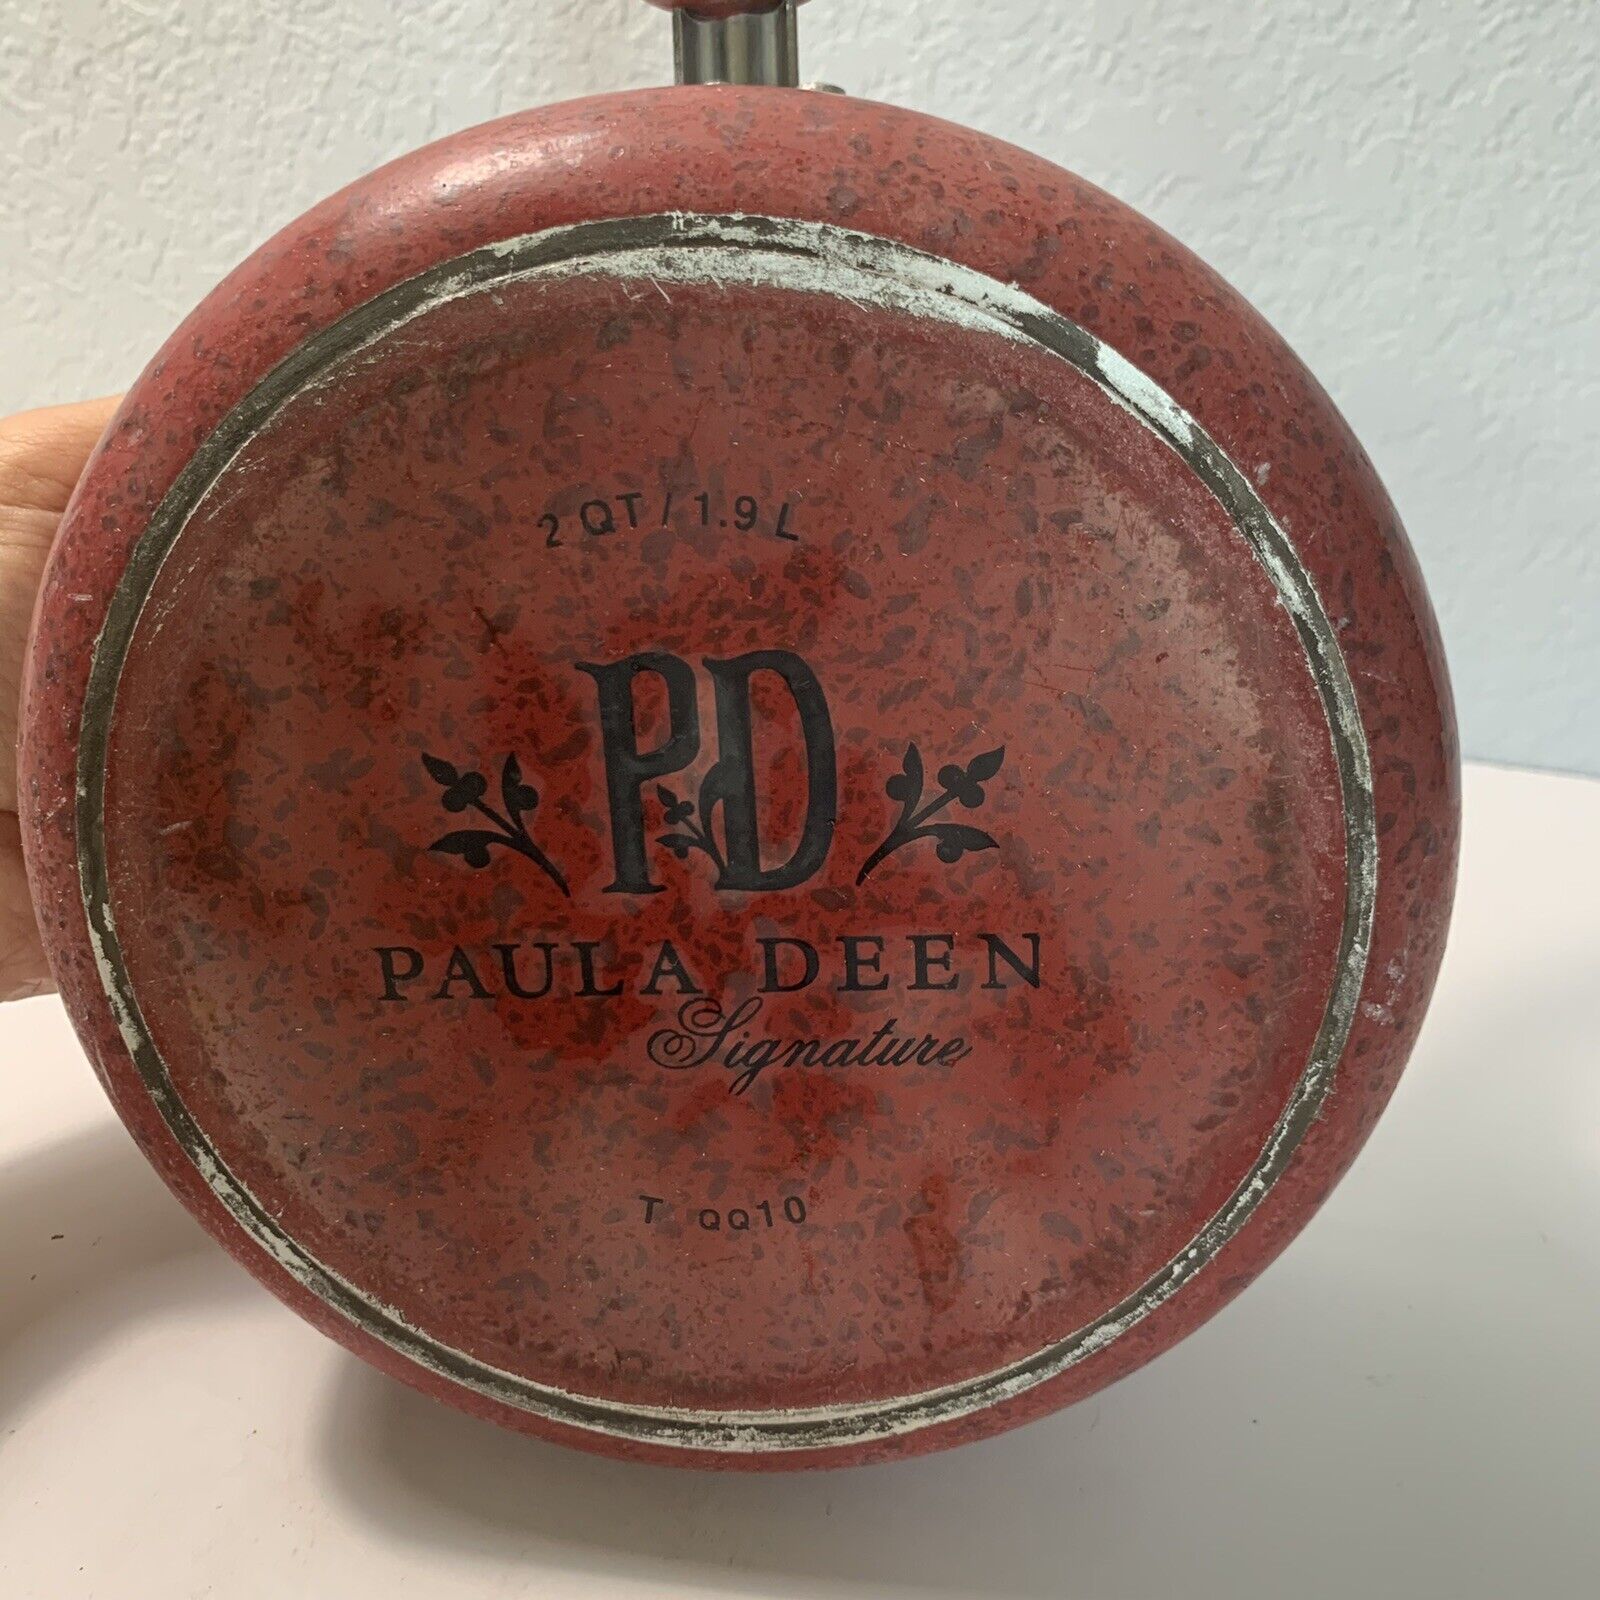 Paula Deen 21620 17-Piece Red Non-Stick Cookware Set, 1 - Kroger